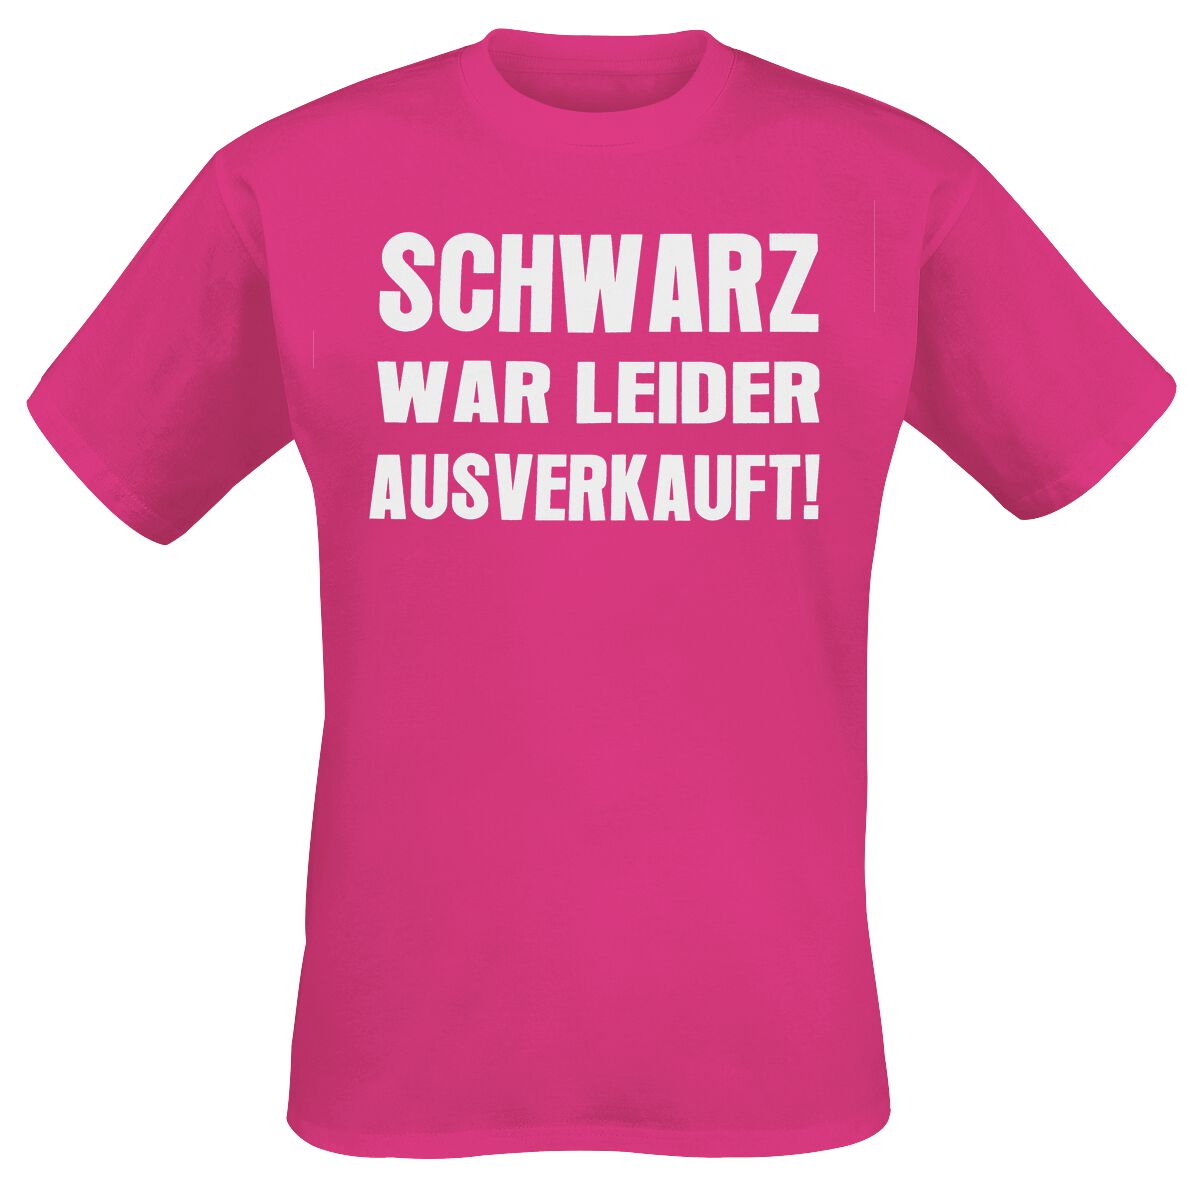 Schwarz war leider ausverkauft T-Shirt pink von Sprüche